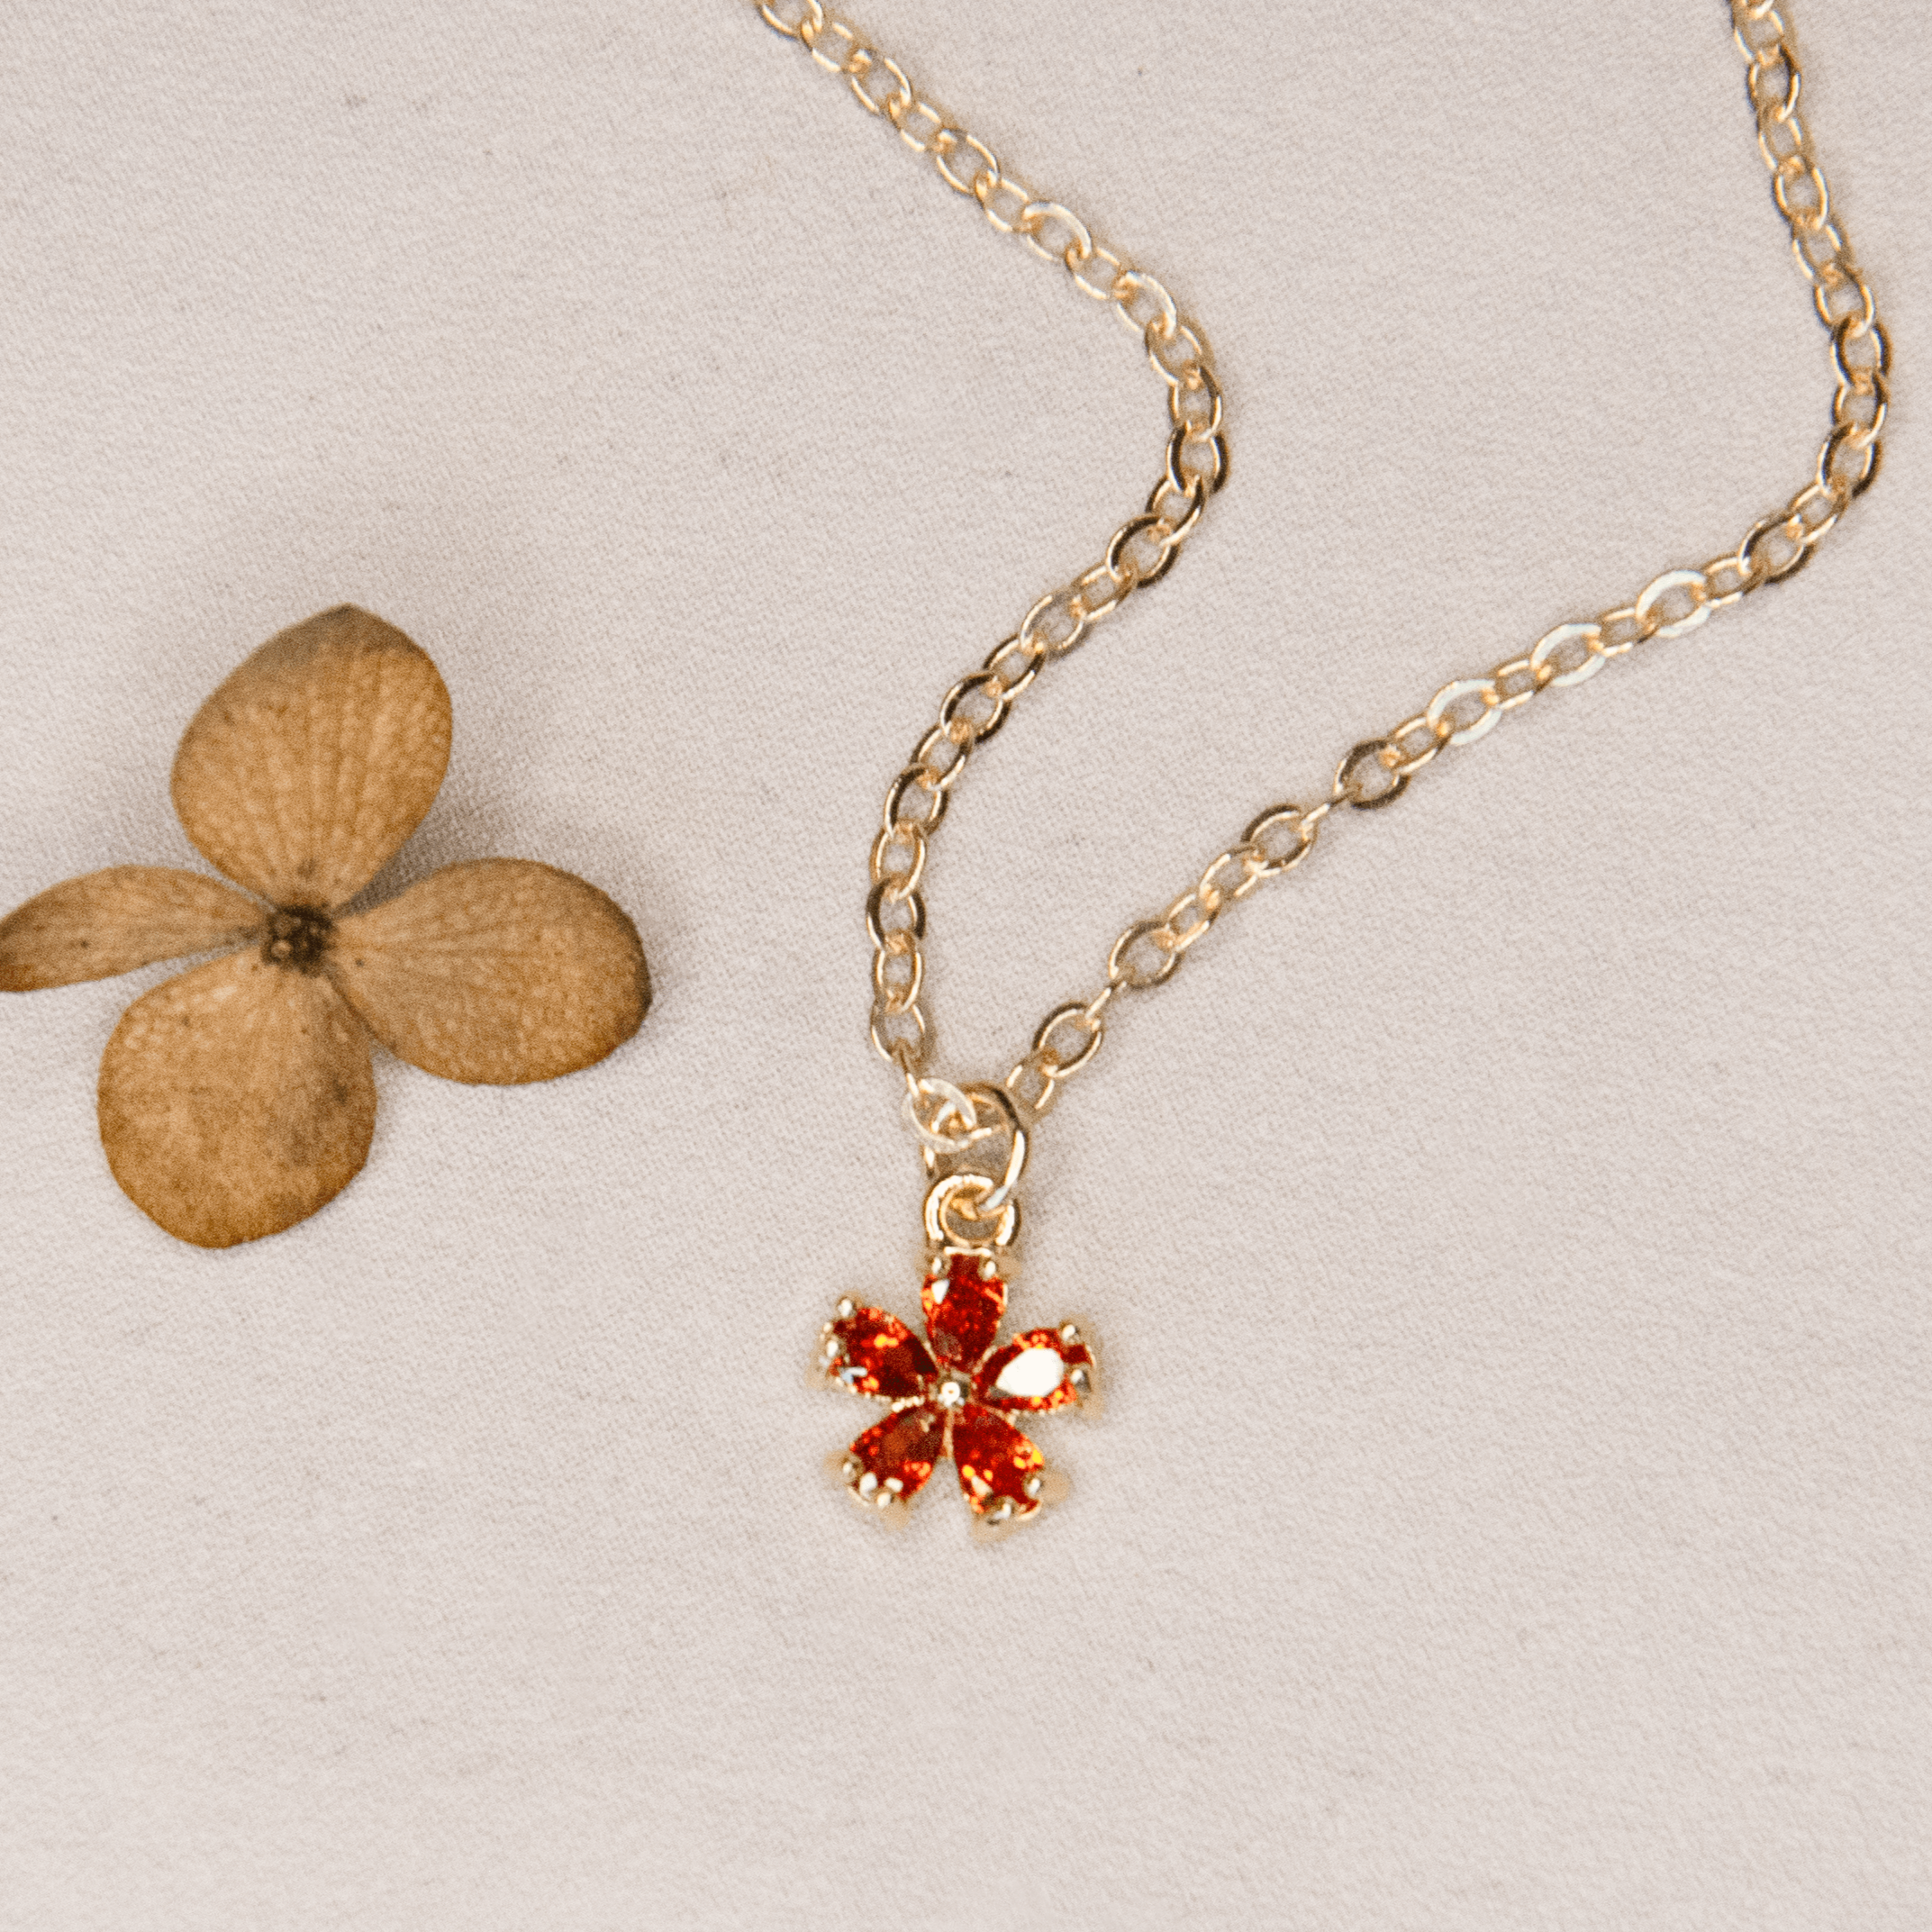 14K Gold-Filled Sunlit Blossom Necklace